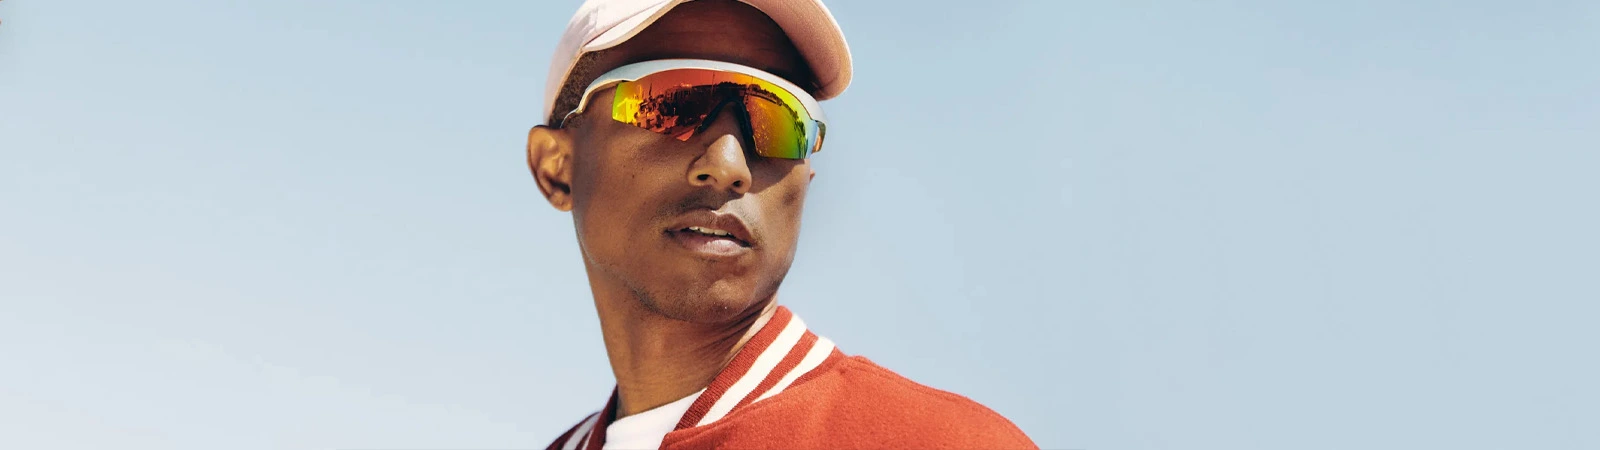 6. Pharrell Williams 250 million United States